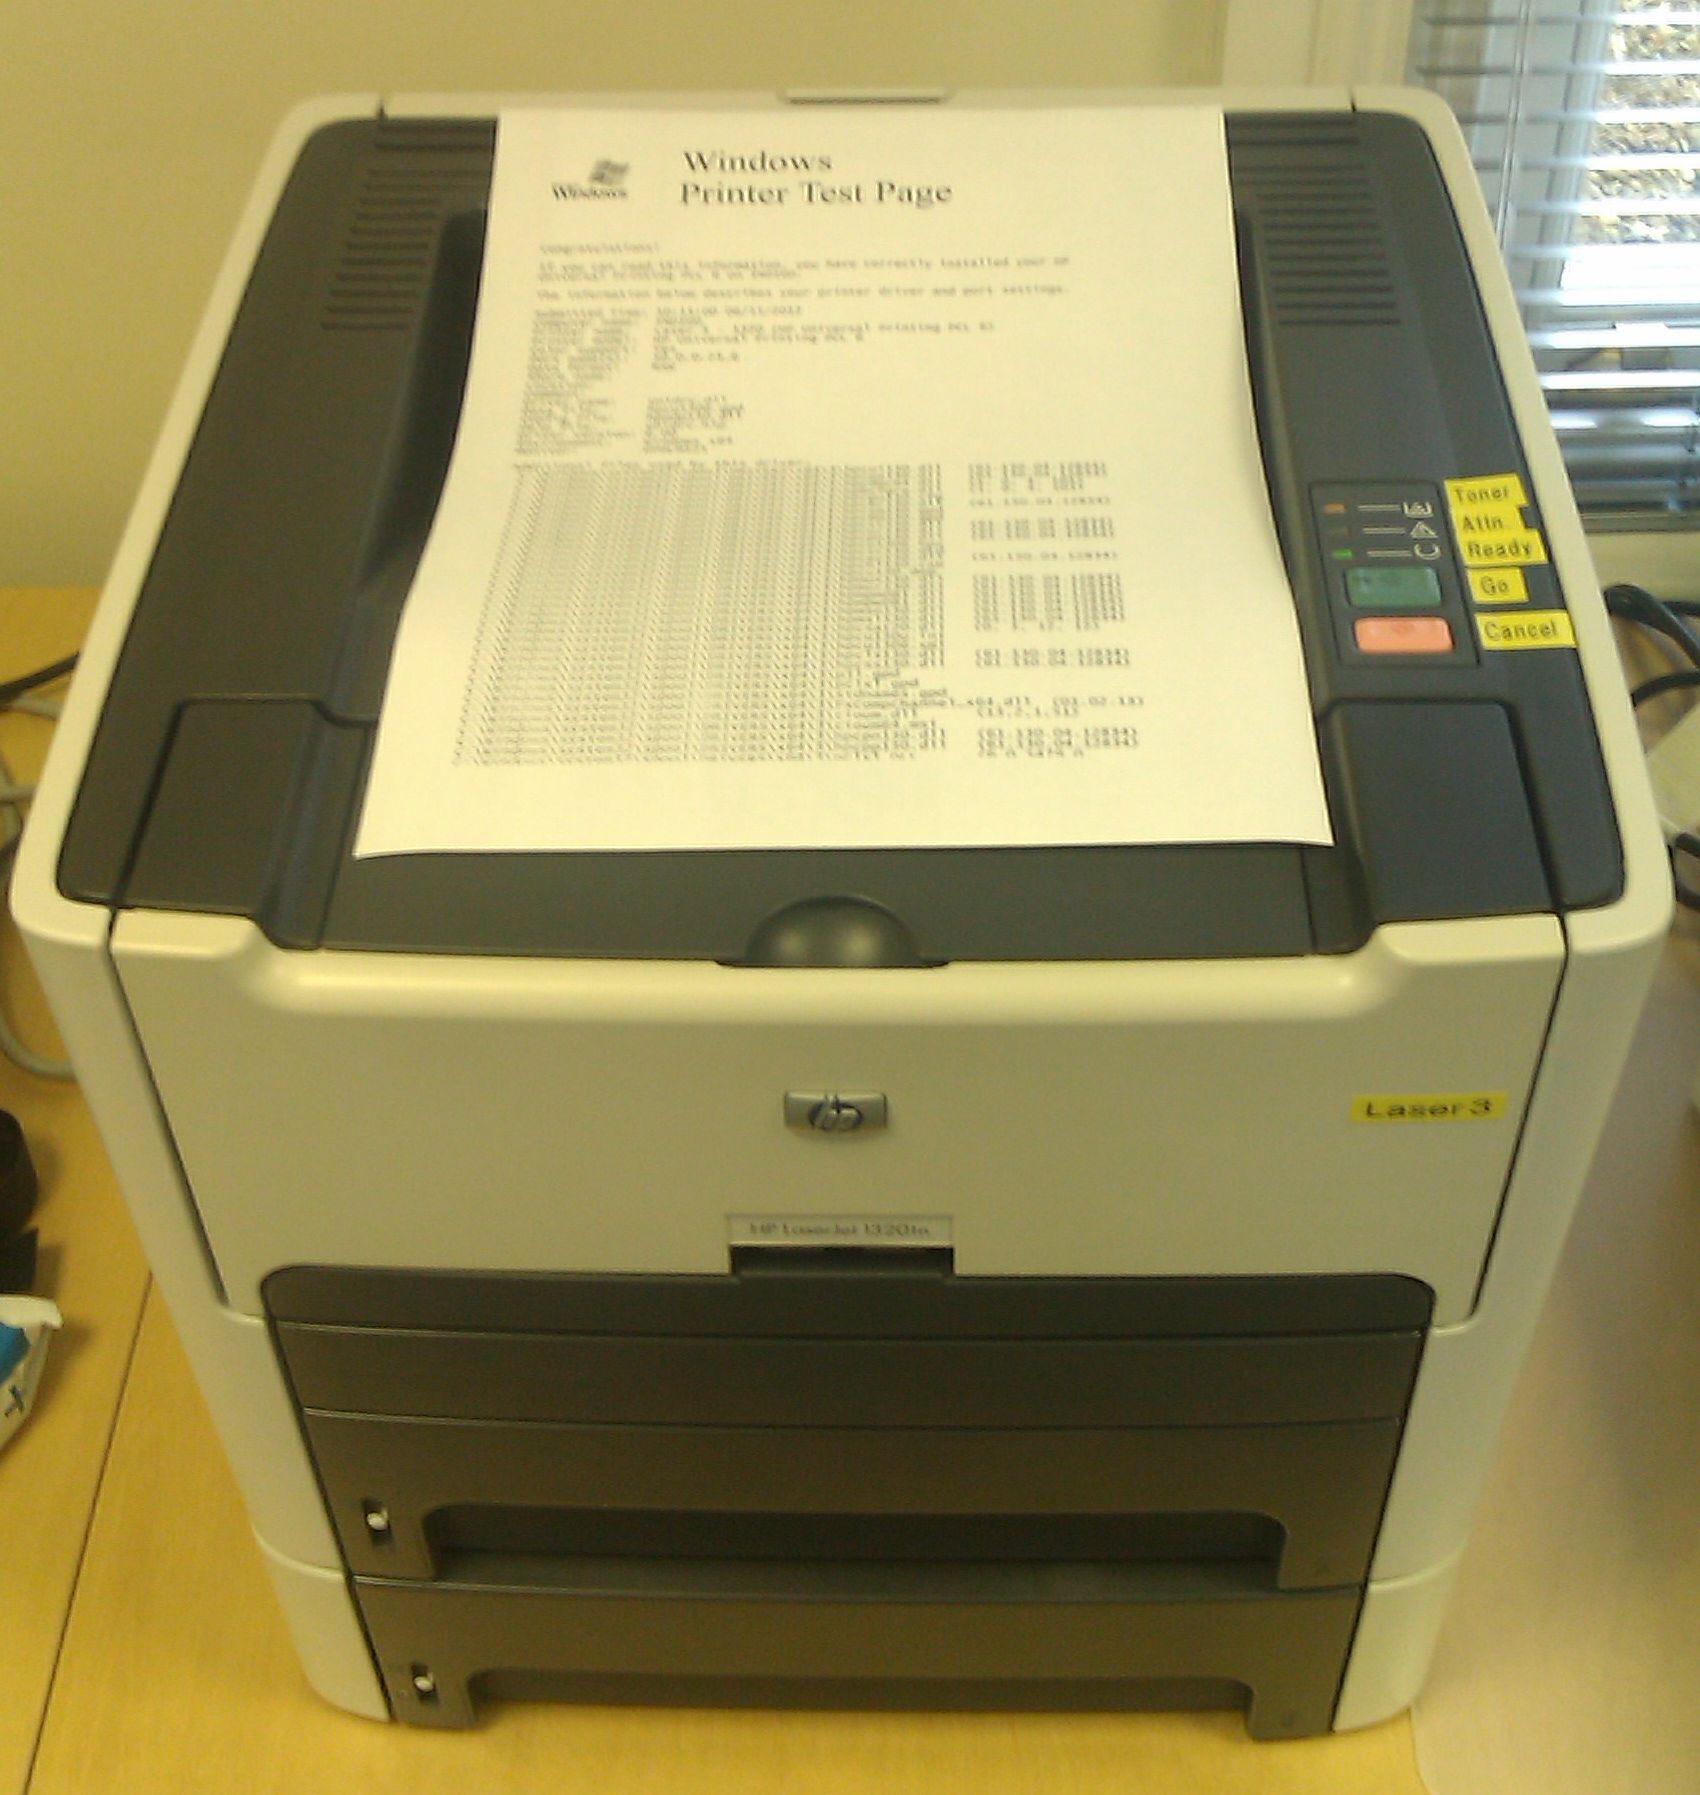 Print Driver For Hp Laserjet 1320n - yellowsage